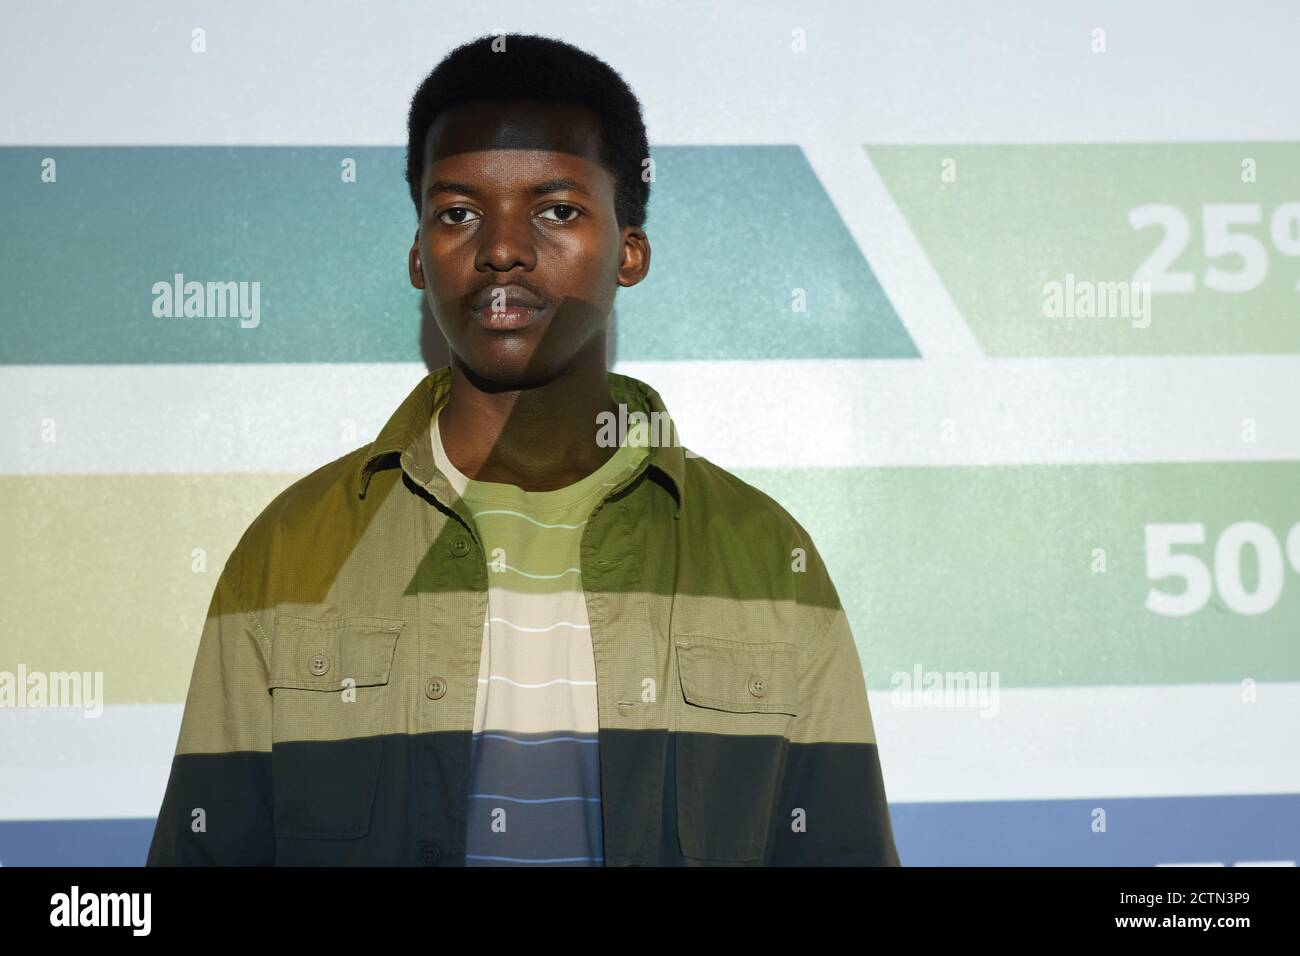 Waist-up-Porträt des jungen afroamerikanischen Mann stehen neben Projektor-Leinwand mit Streifen und Zahlen darauf, kopieren Raum Stockfoto